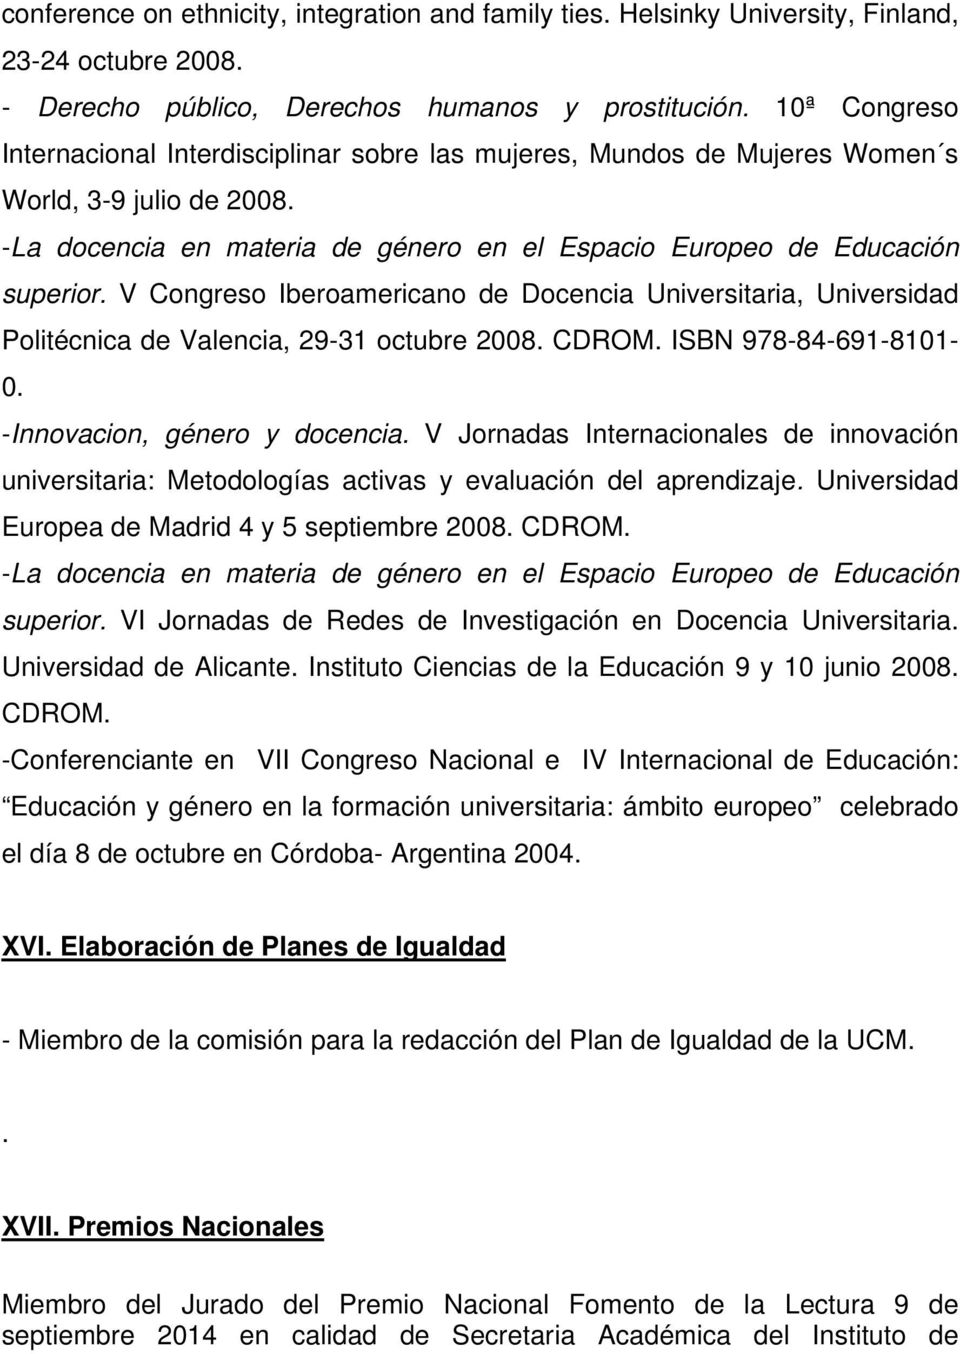 V Congreso Iberoamericano de Docencia Universitaria, Universidad Politécnica de Valencia, 29-31 octubre 2008. CDROM. ISBN 978-84-691-8101- 0. -Innovacion, género y docencia.